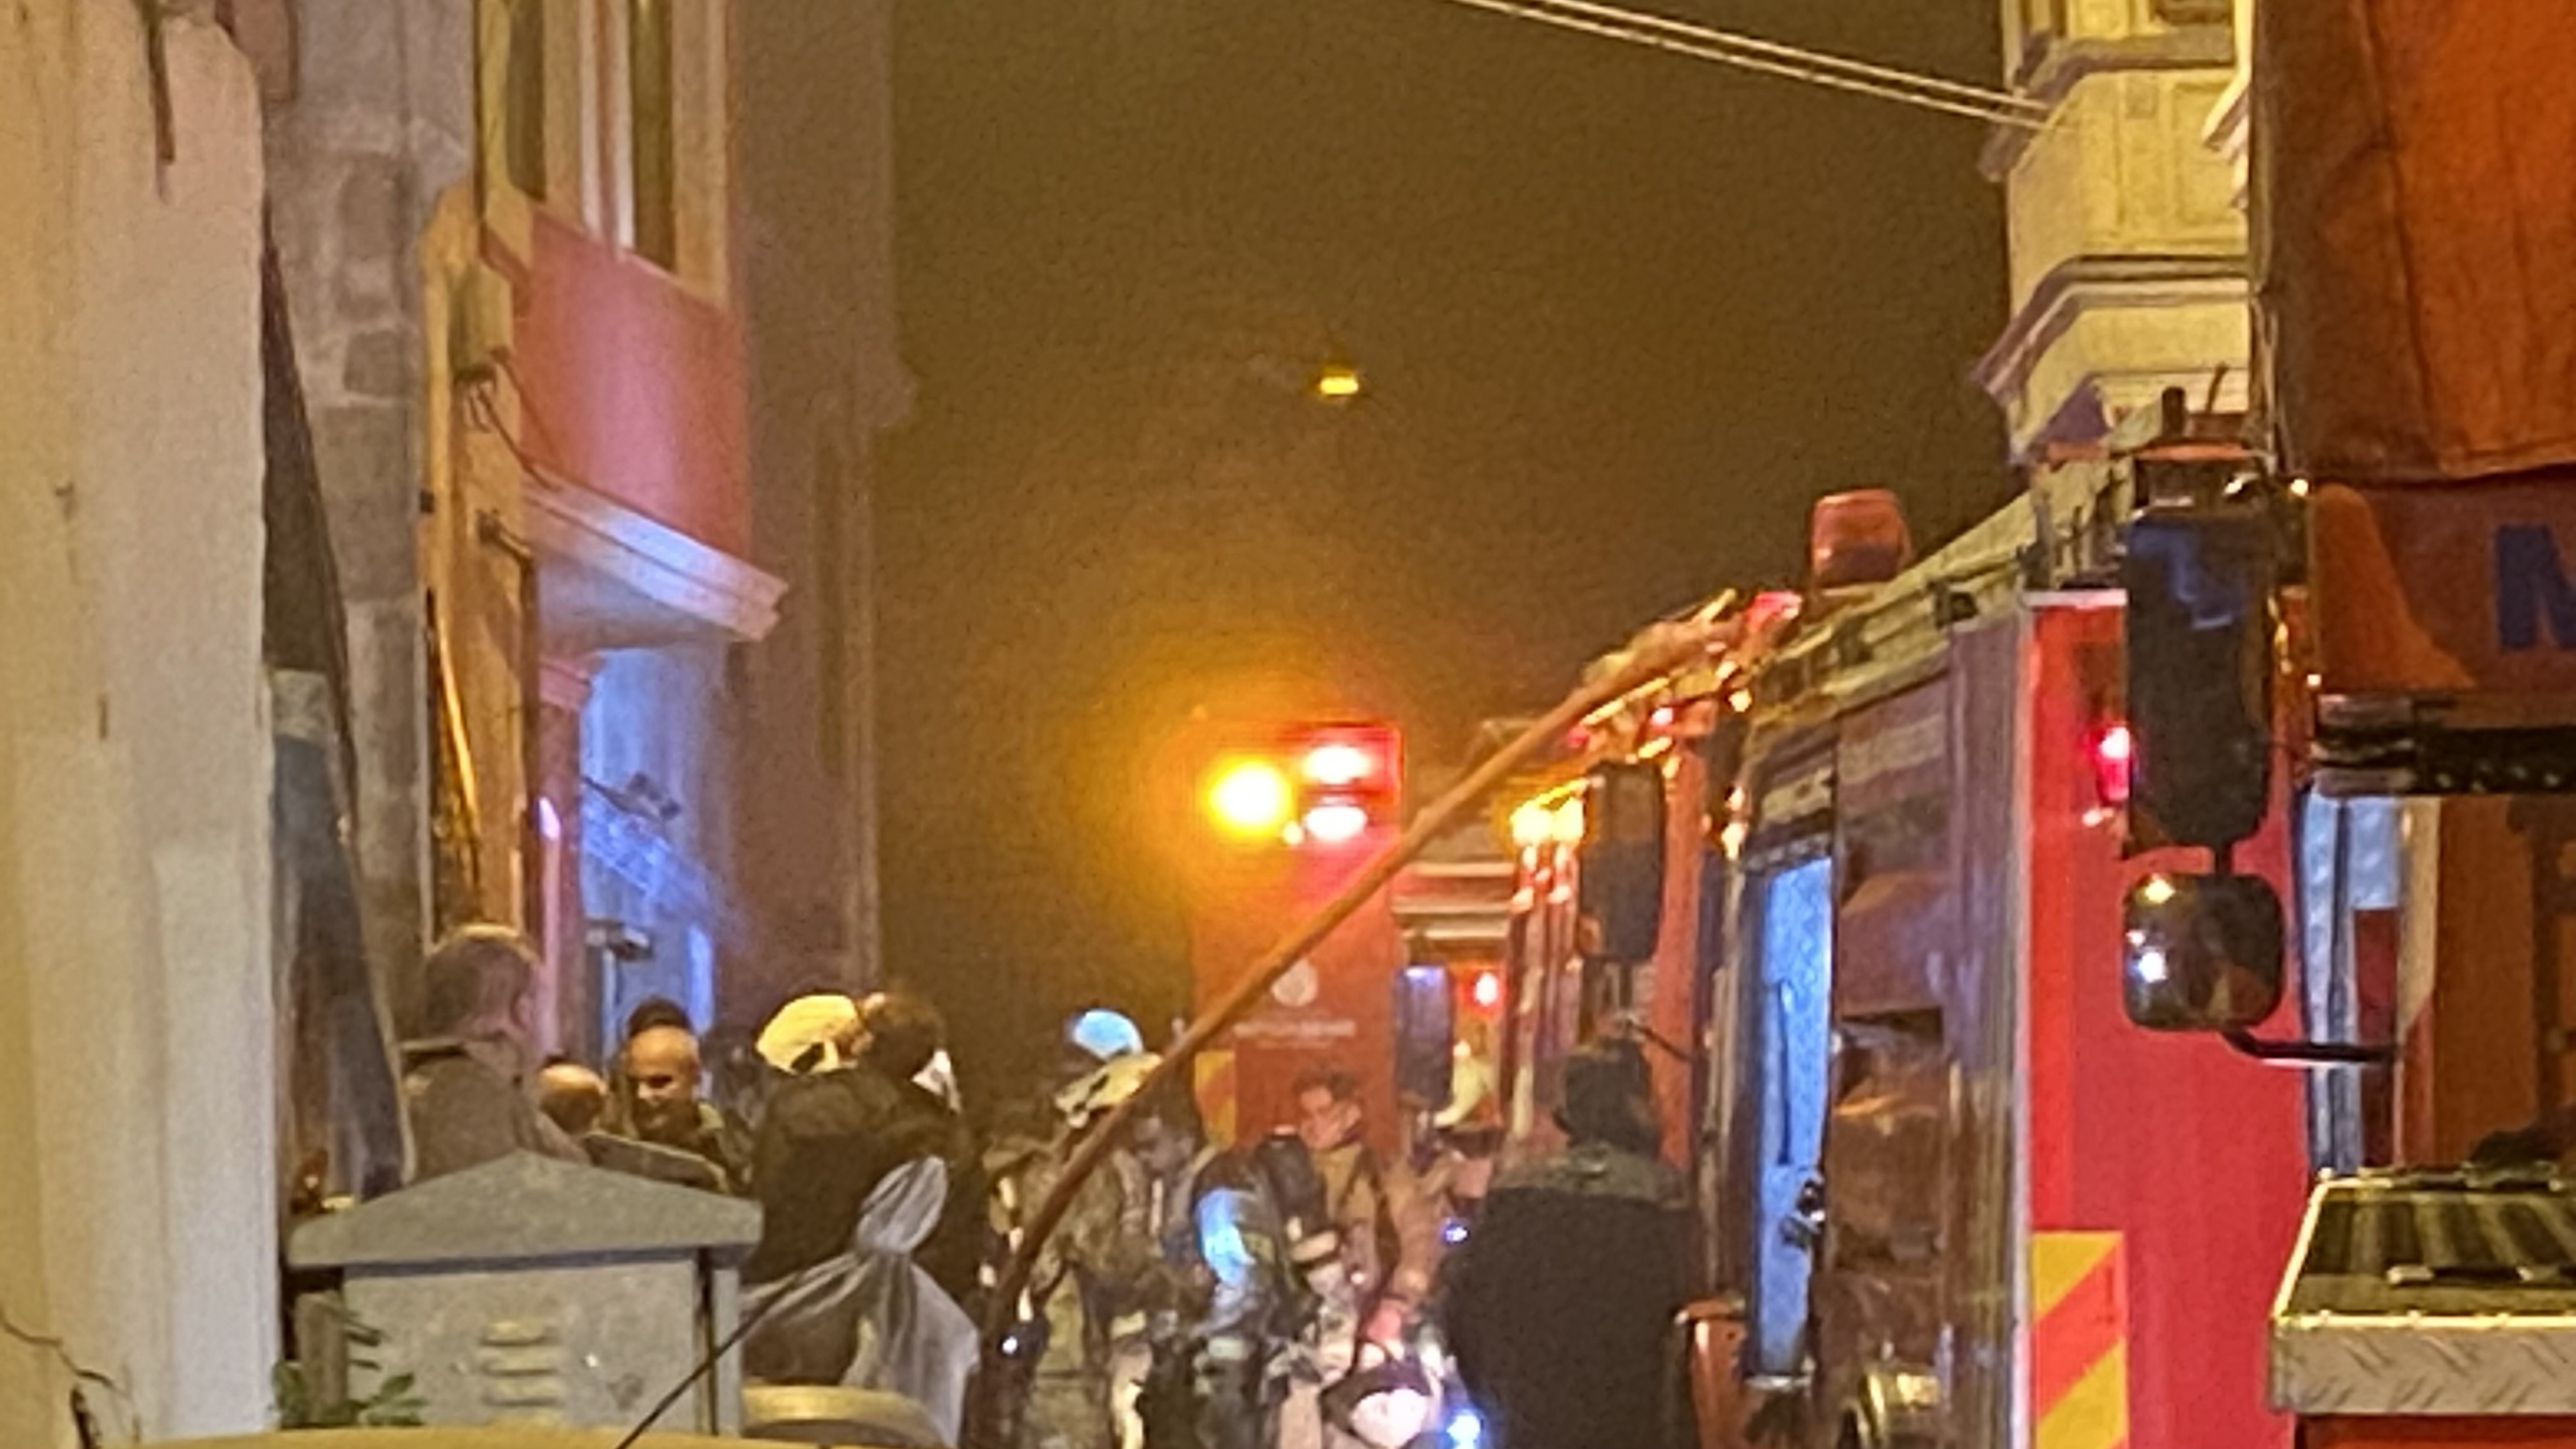 İstanbul Fatih'te geceyi yanan bina aydınlattı